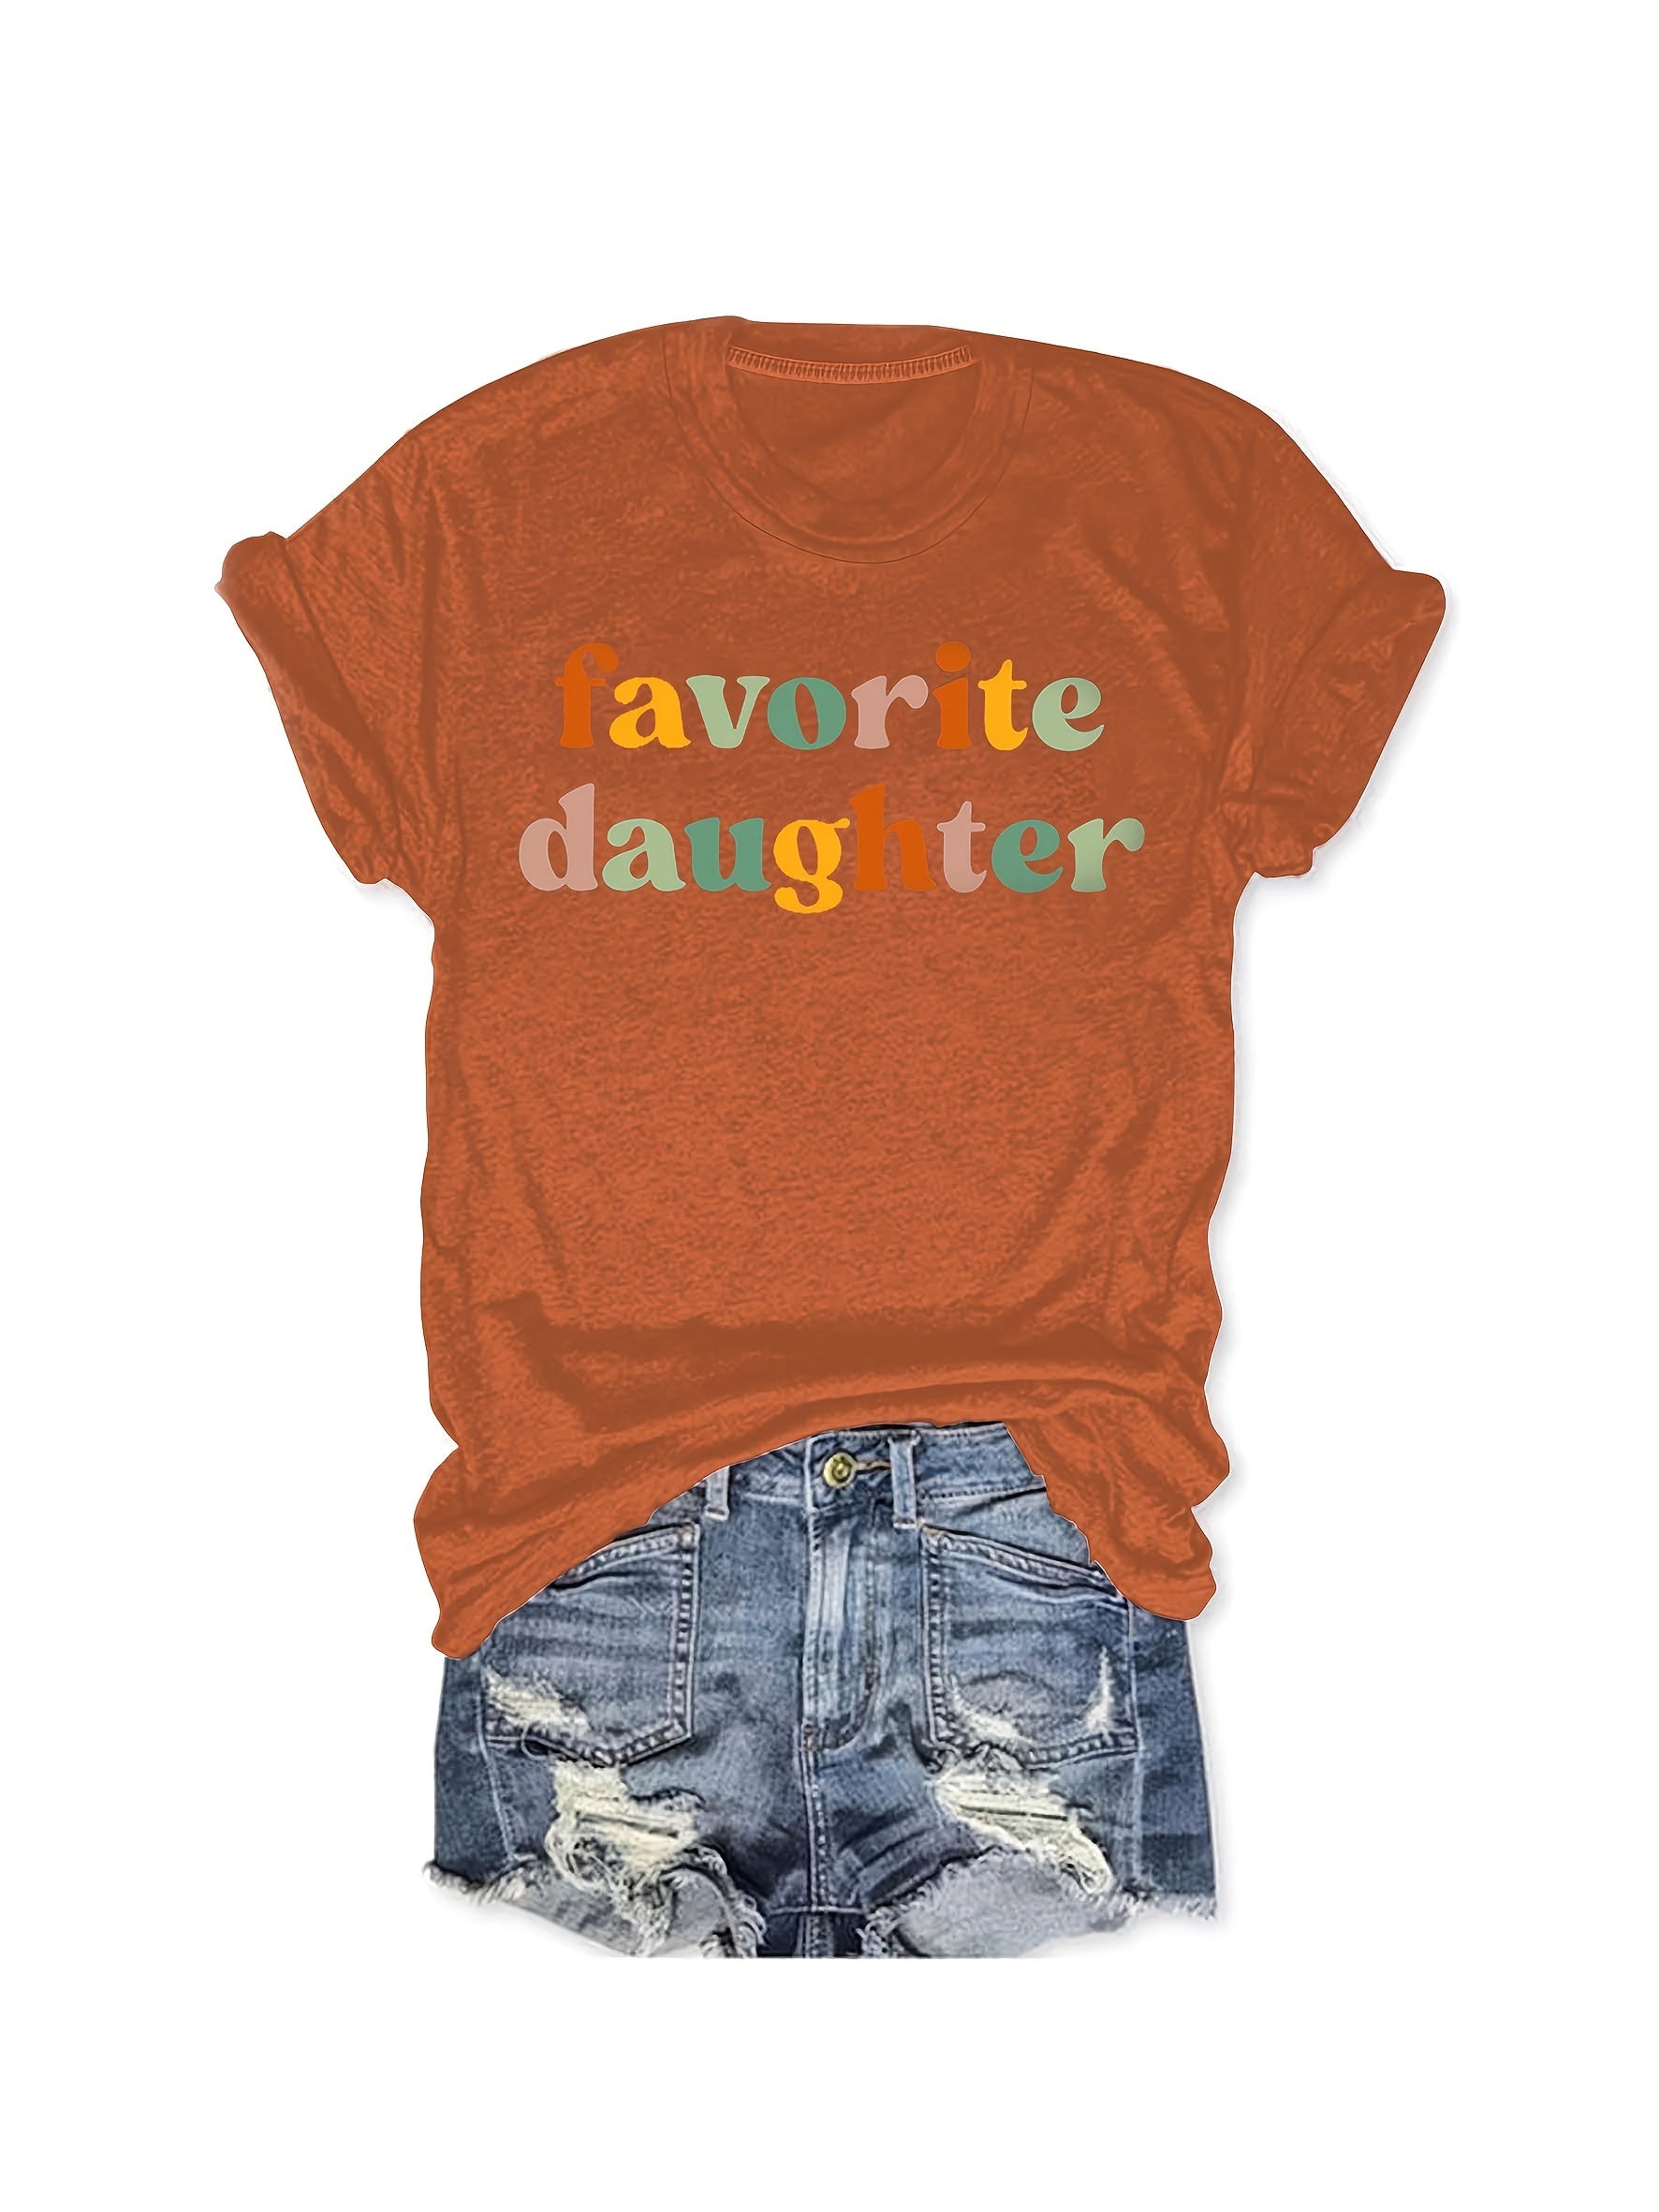 Favorite daughter T-shirt